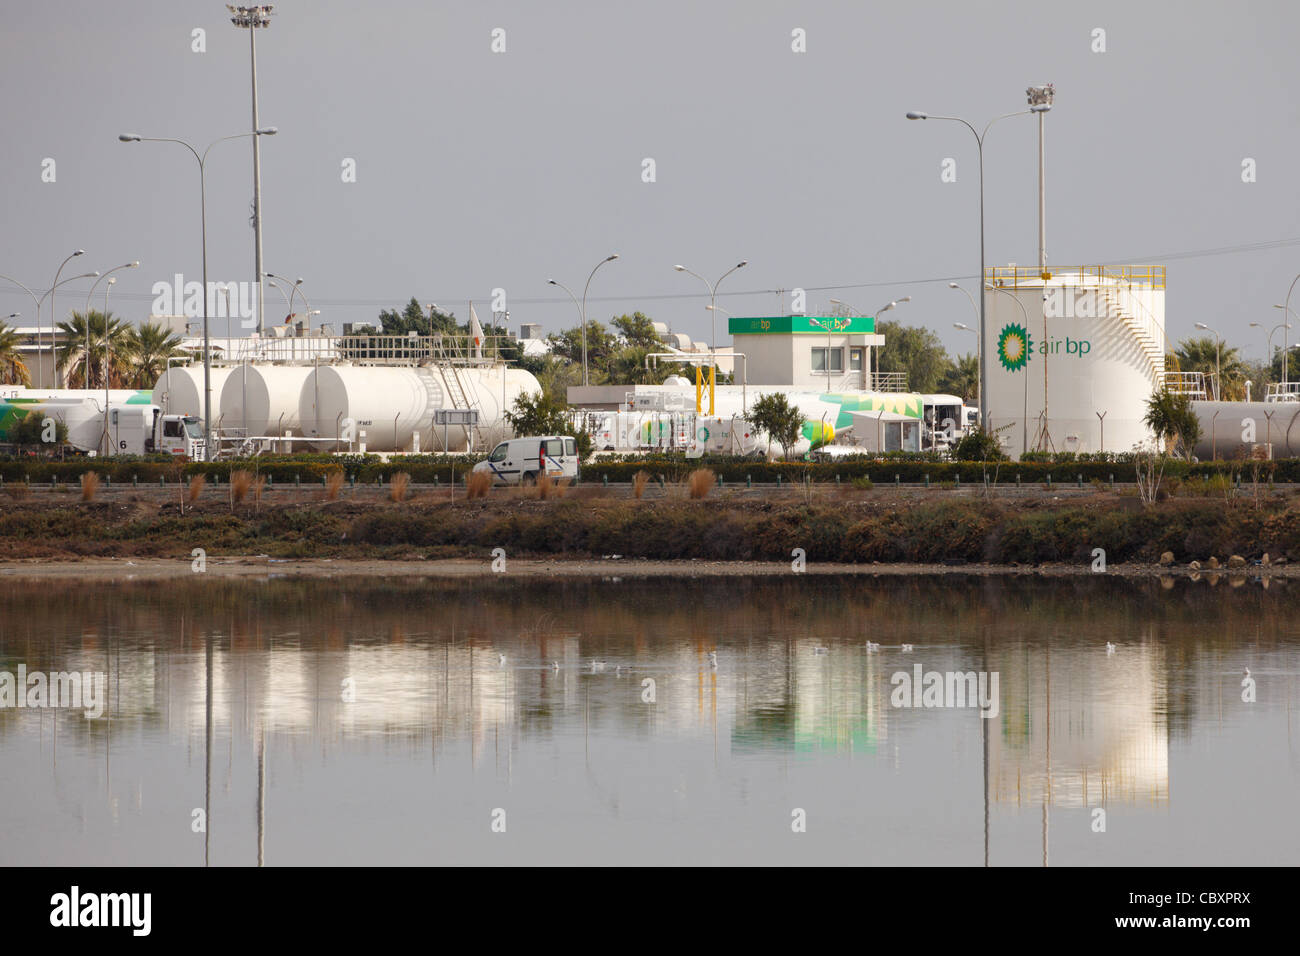 British Petroleum struttura presso l'aeroporto di Larnaca, Cipro Foto Stock